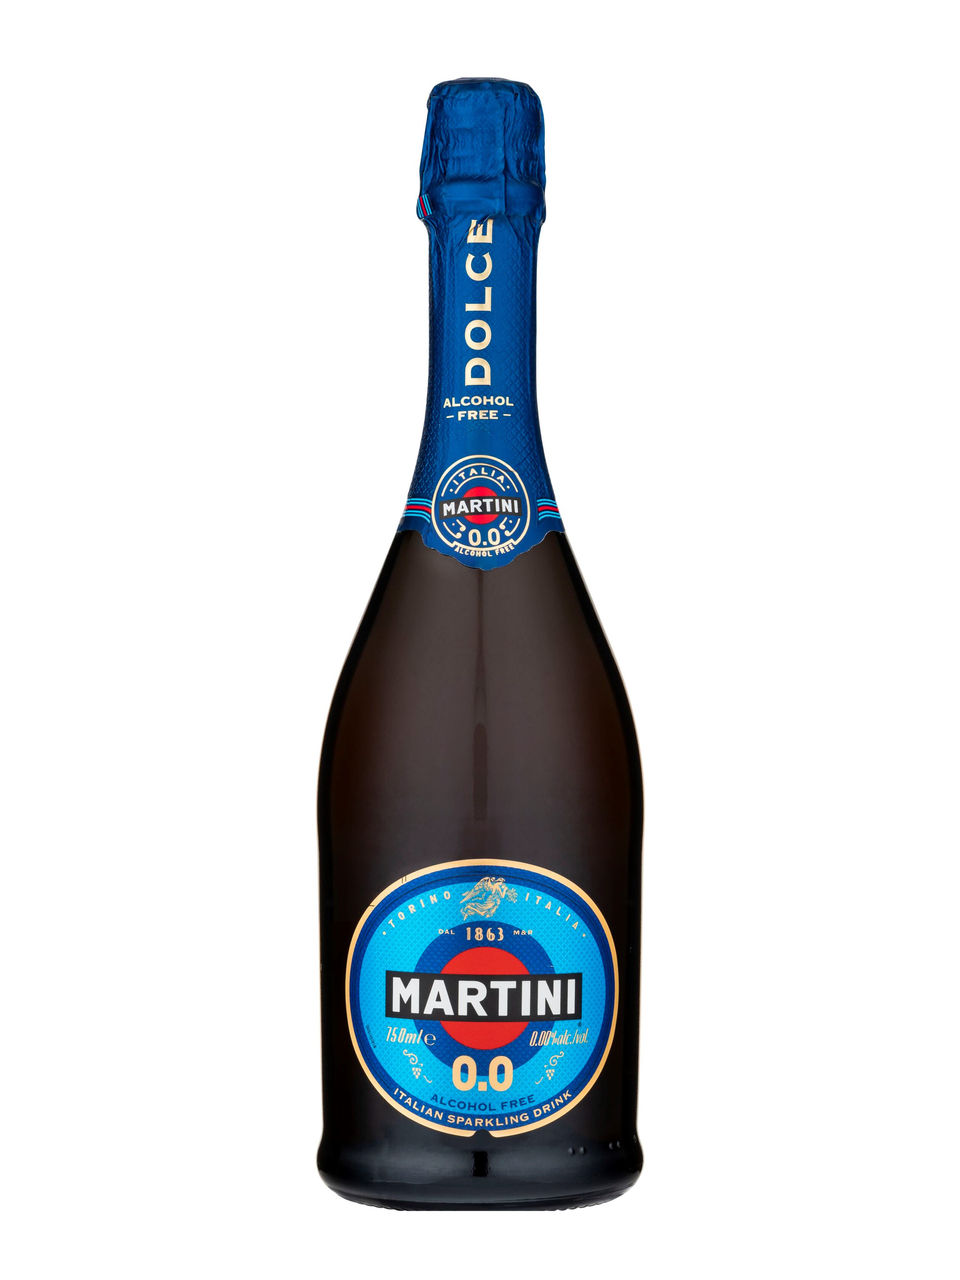 Martini Sans alcool : 2 références à tester d'urgence ! - ForGeorges